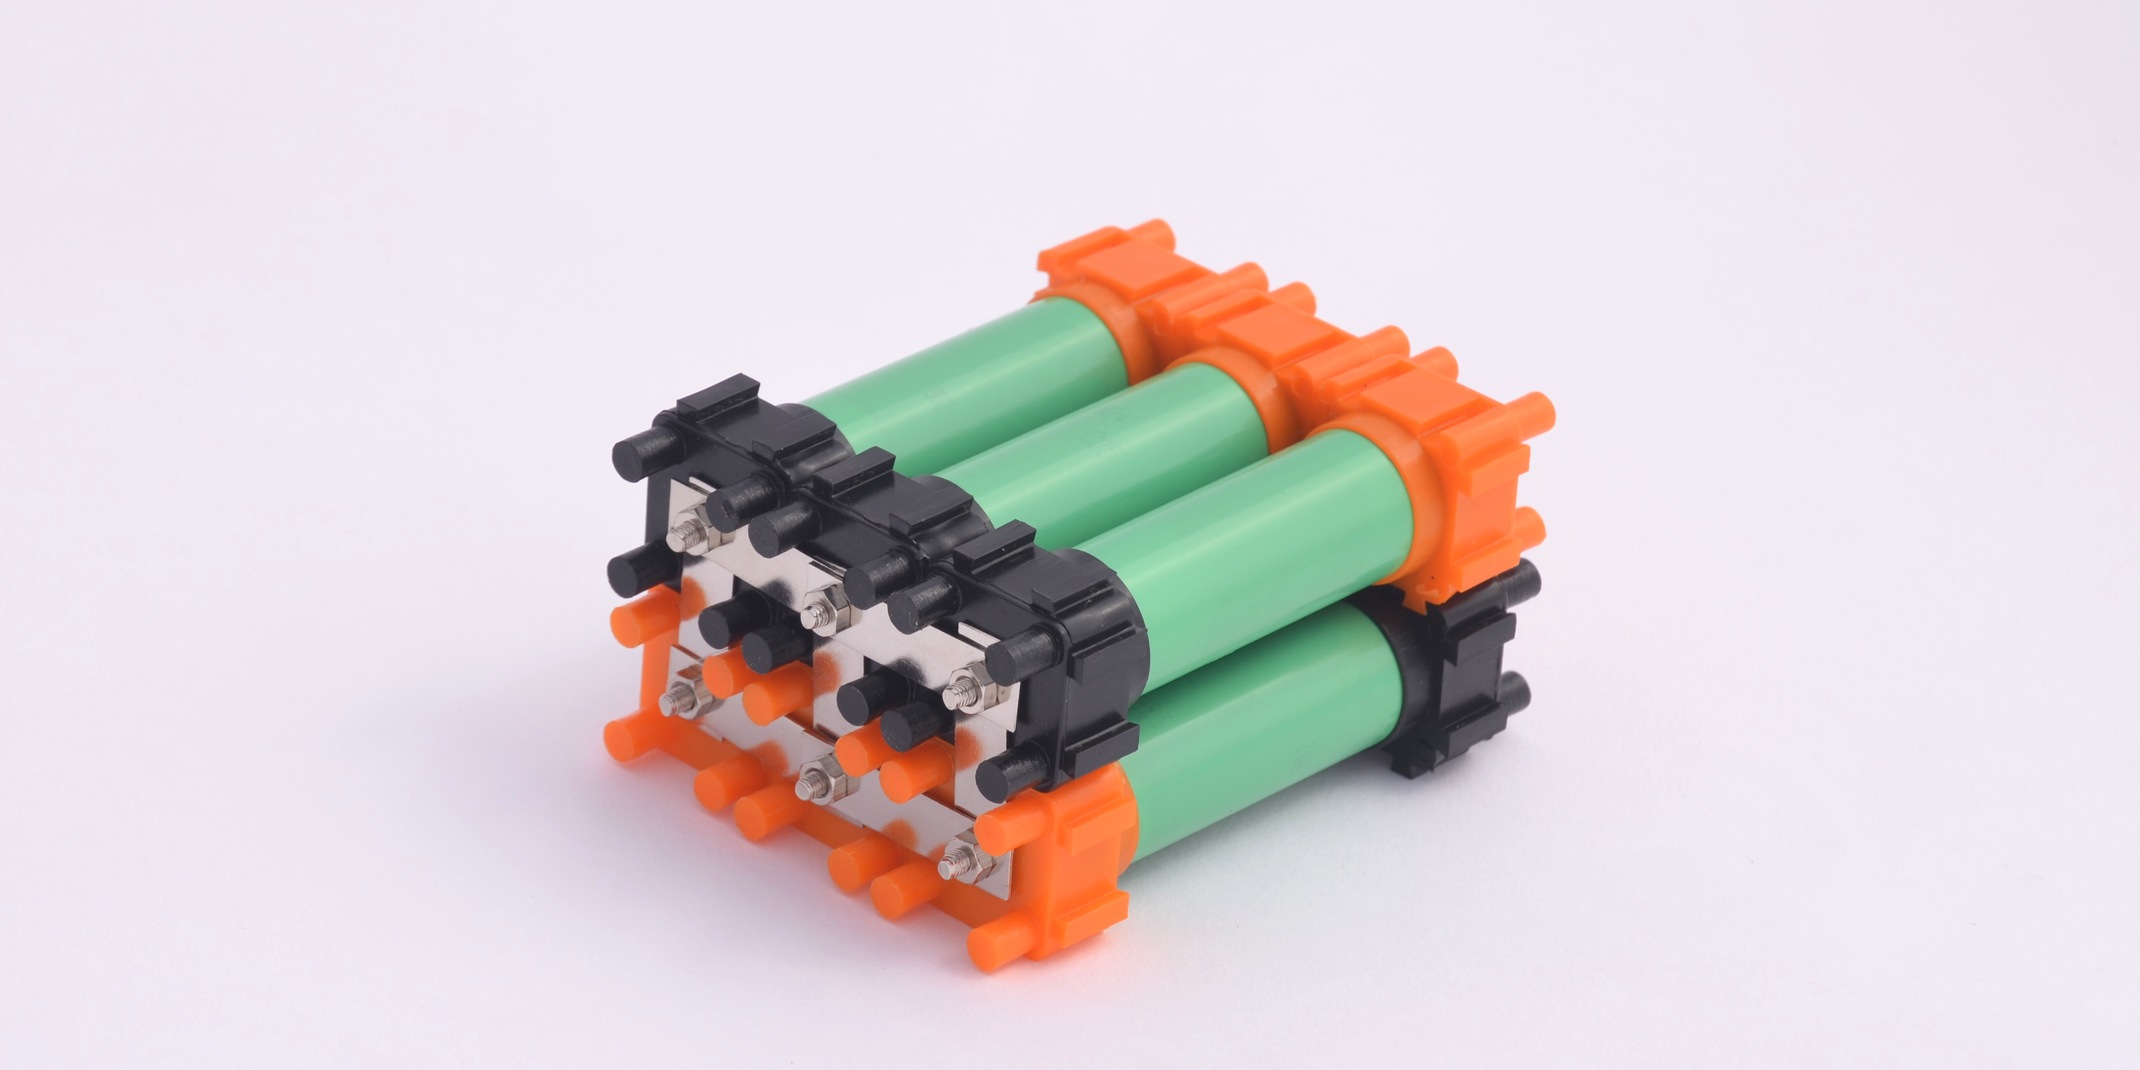 DIY Li-ion battery kit opens door for homemade ebikes, powerwalls and even | Electrek